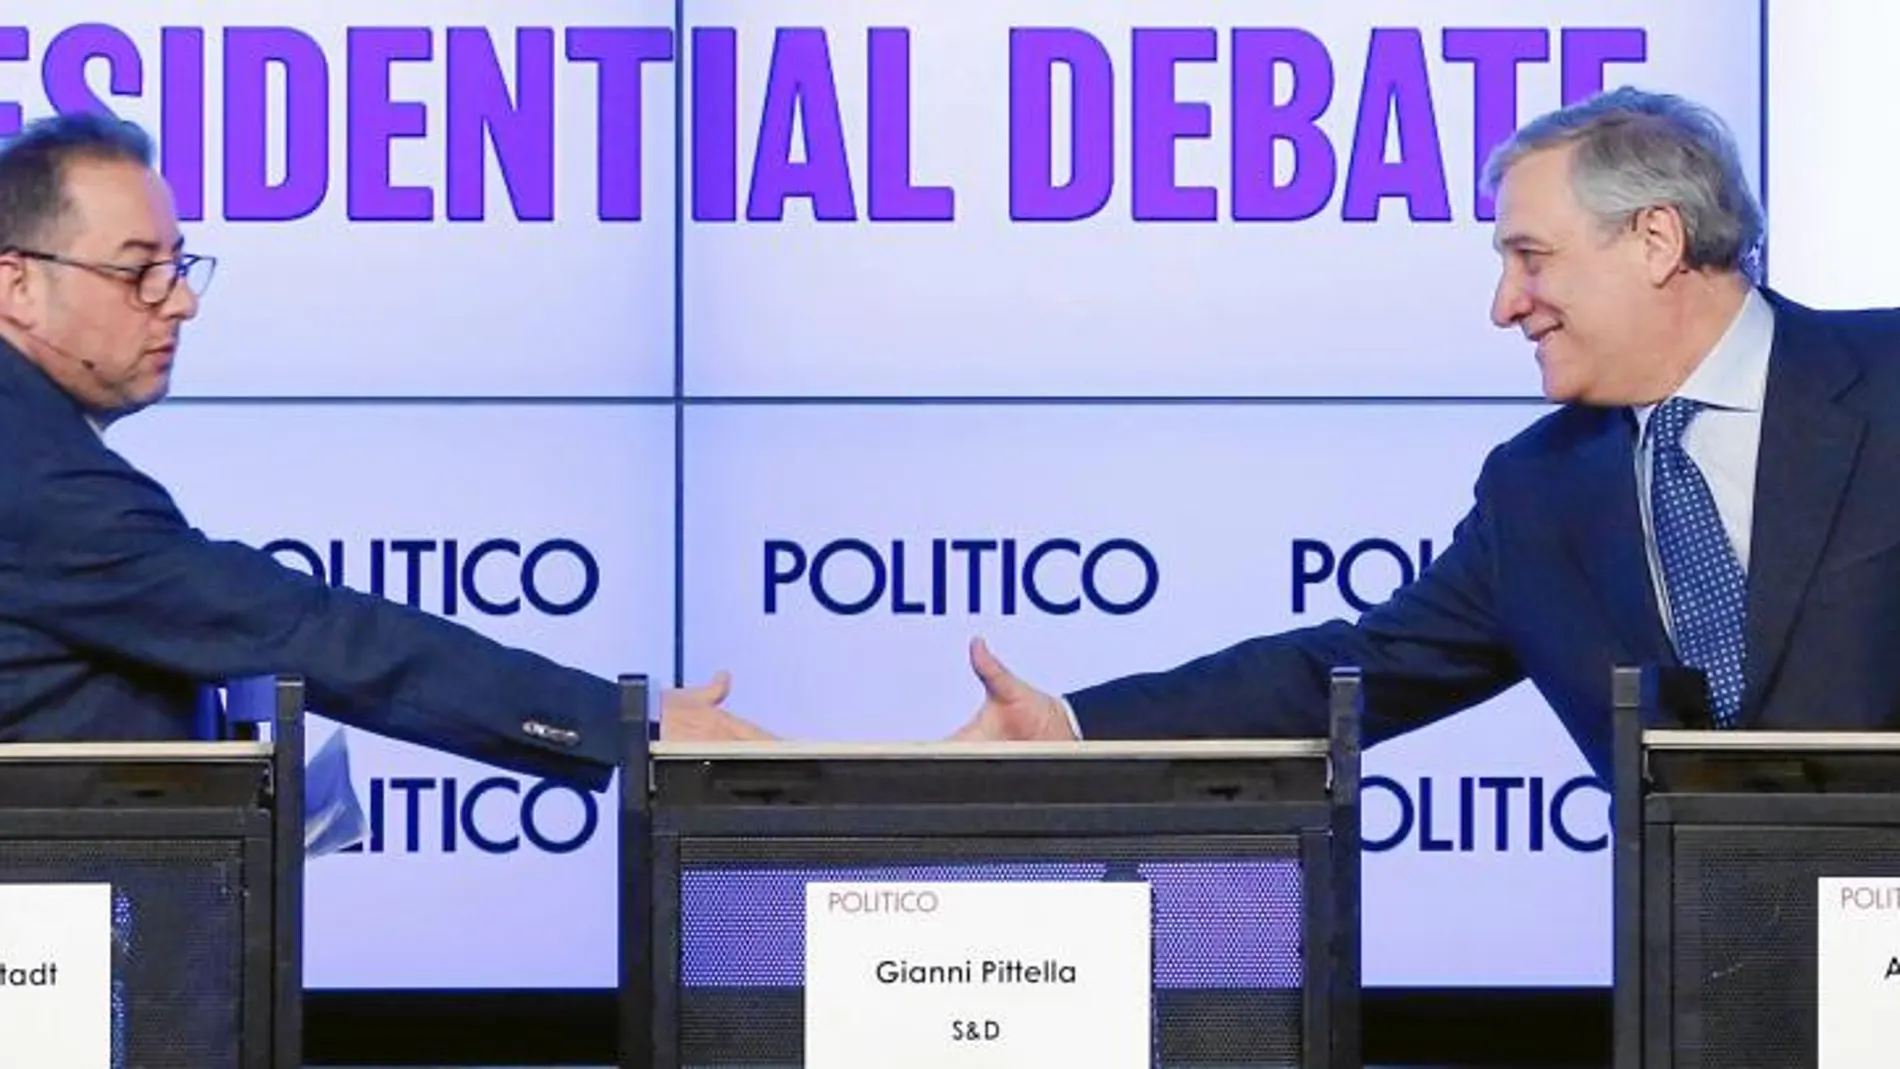 Duelo entre italianos. Pittella y Tajani participaron el día 11 en un debate organizado por «Politico»